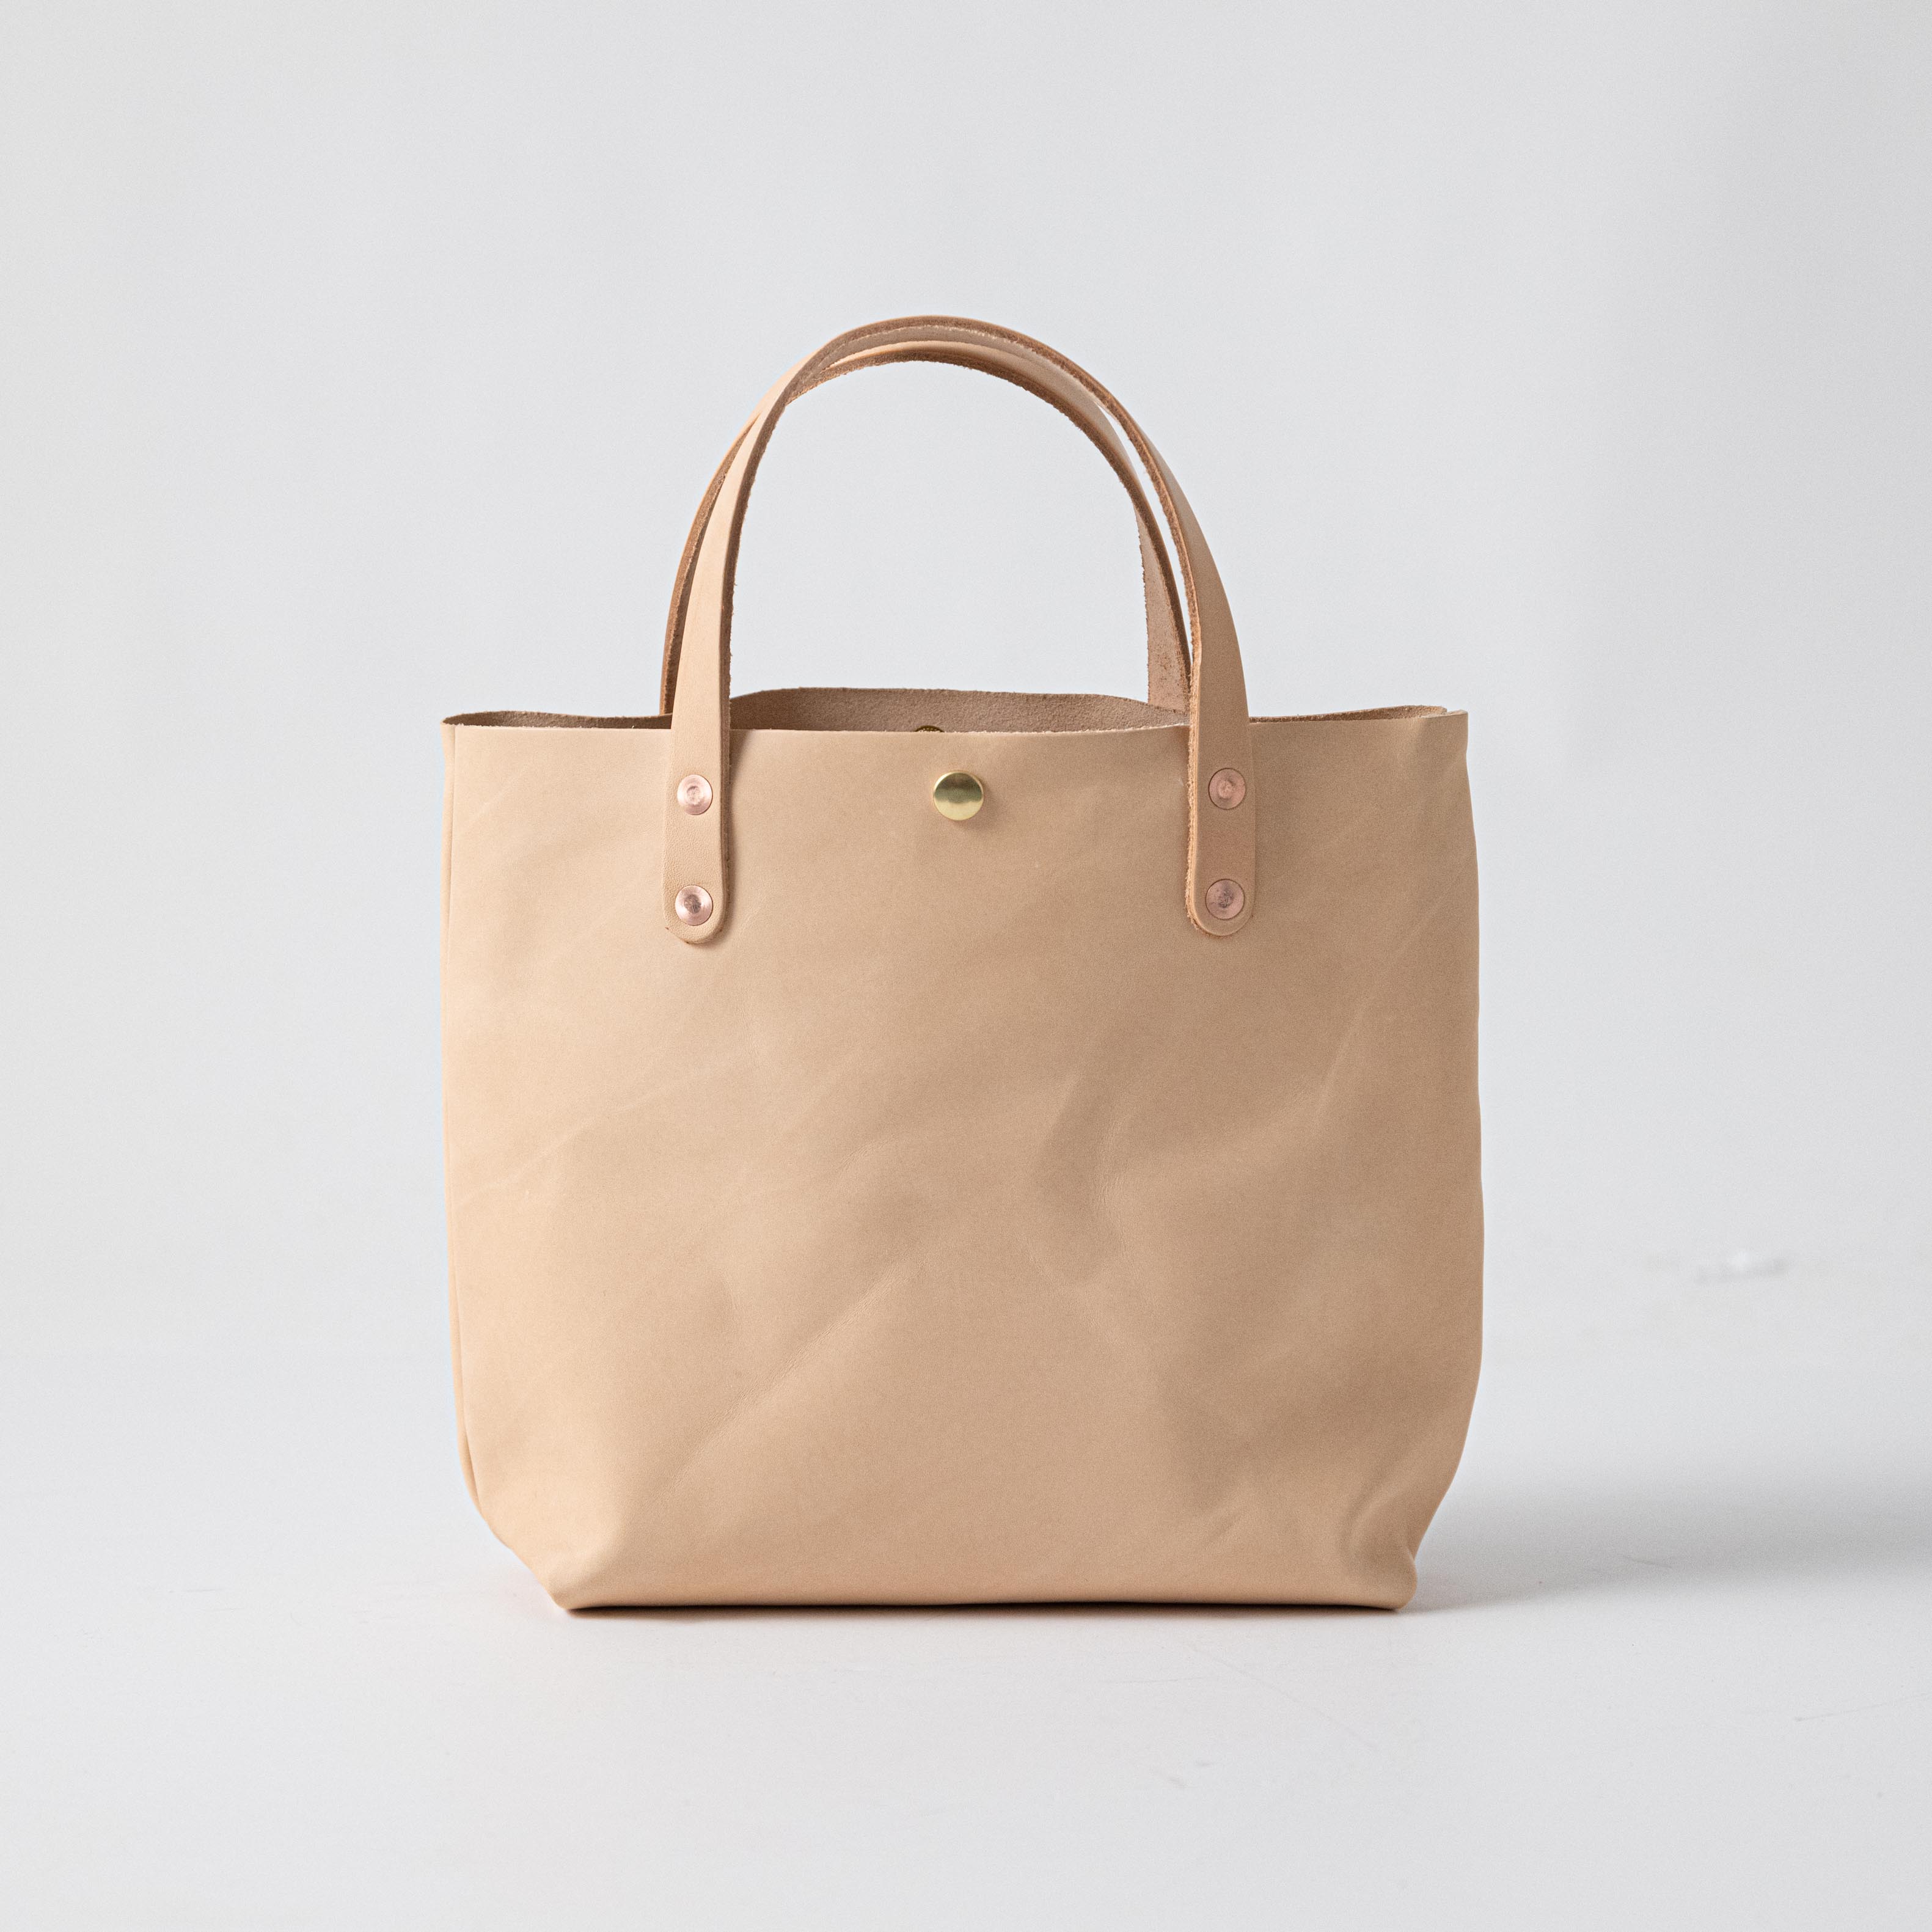 Ten Tassel Bags - Connecticut in Style